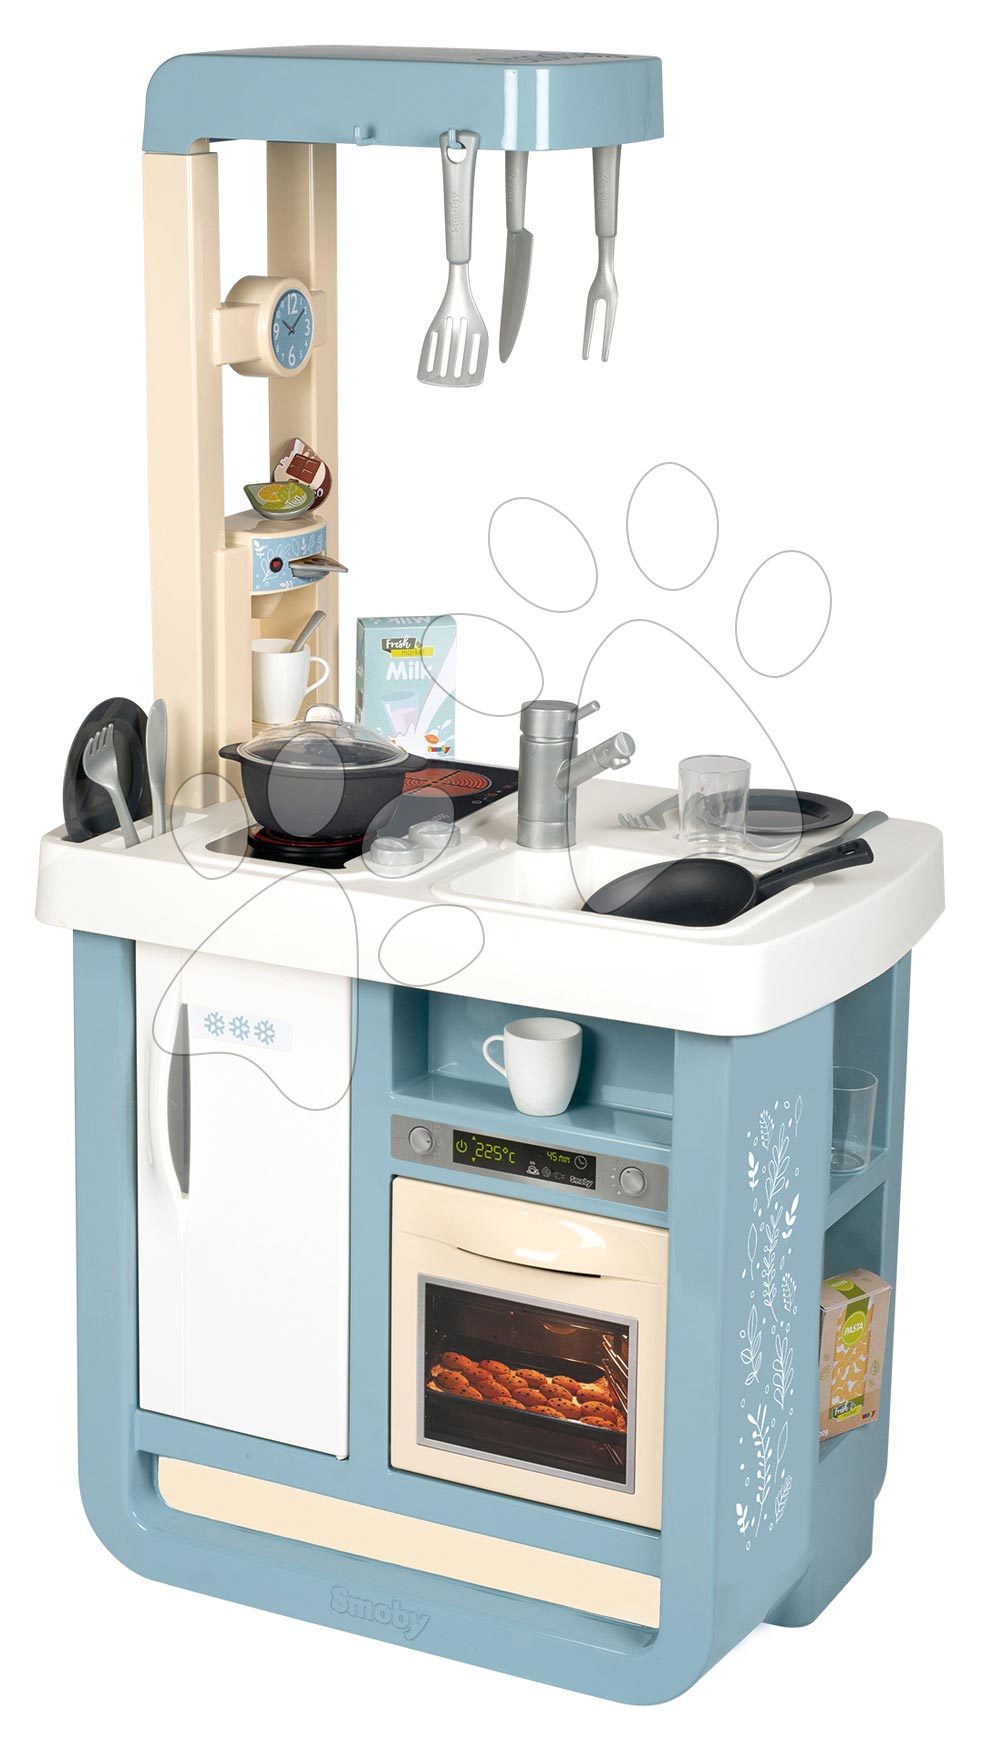 Elektronické kuchyňky - Kuchyňka elektronická Bon Appetit Kitchen Smoby s kávovarem a chladnička s pečicí troubou 23 doplňků 96 cm výška/49 cm pult